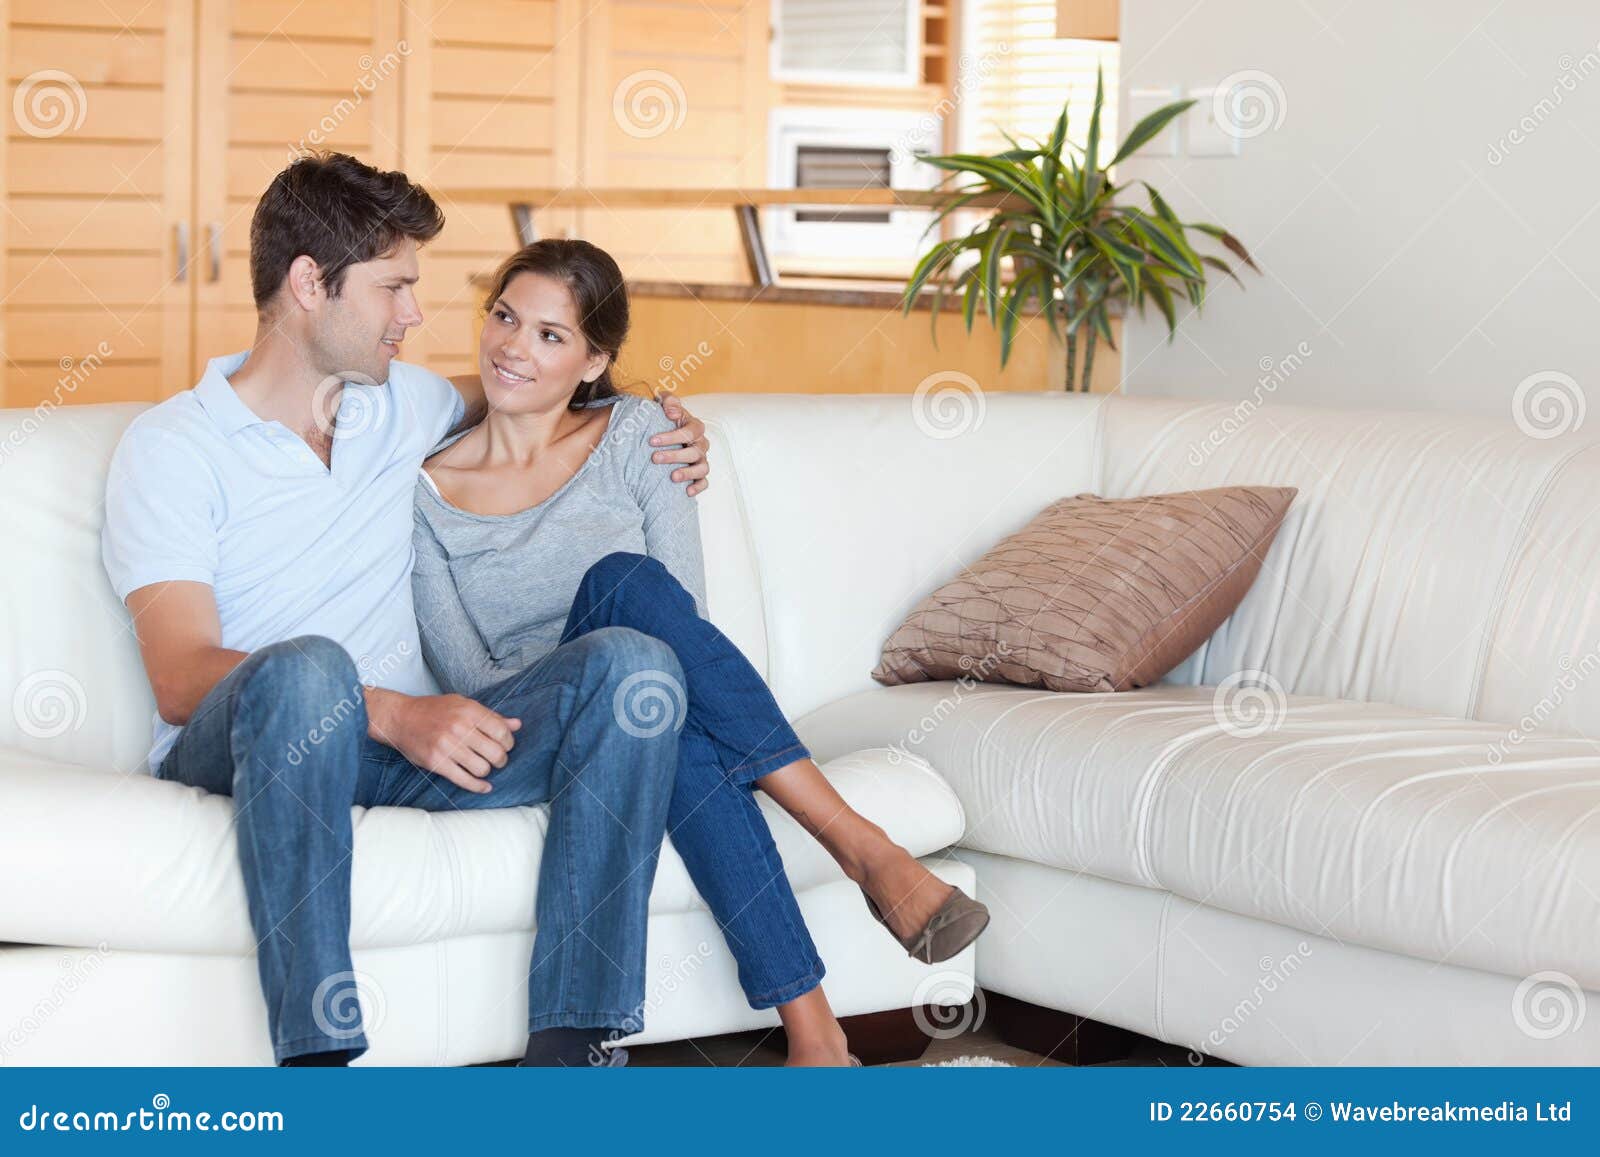 Фото парень с девушкой сидят на диване ...